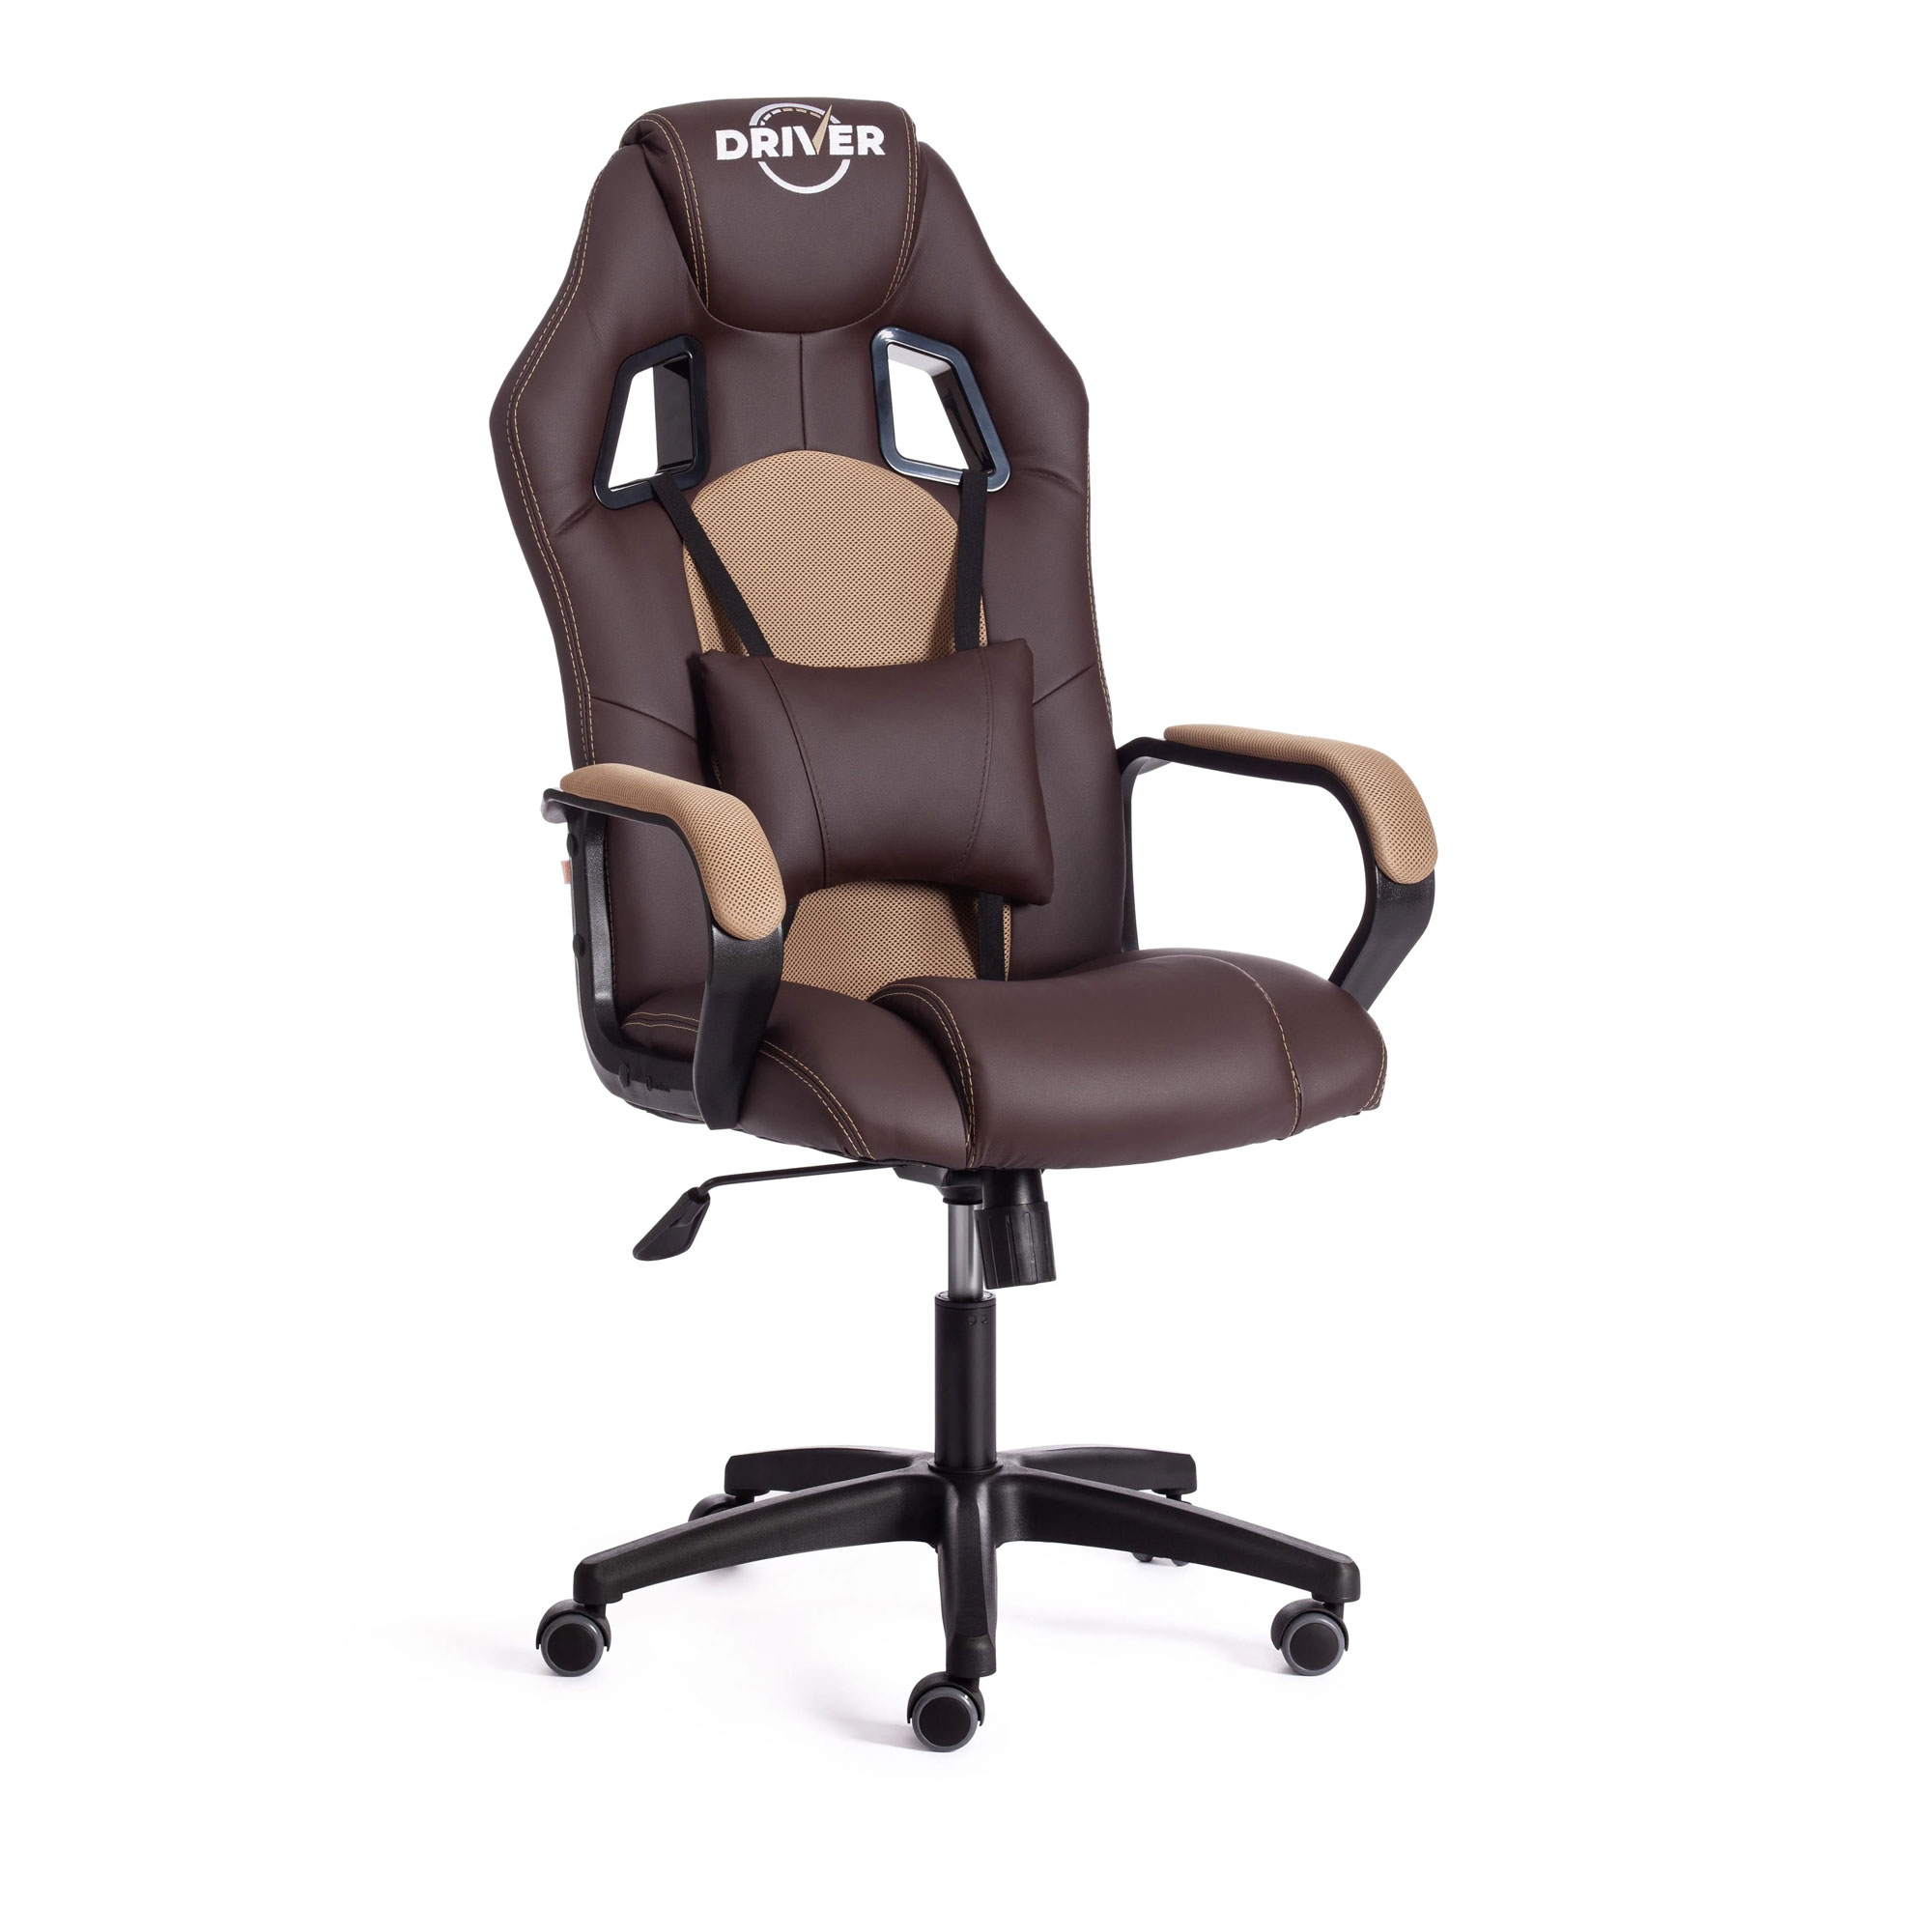 Кресло компьютерное TC Driver искусственная кожа коричневое с бронзовым 55х49х126 см кресло компьютерное tc driver флок серое 55х49х126 см